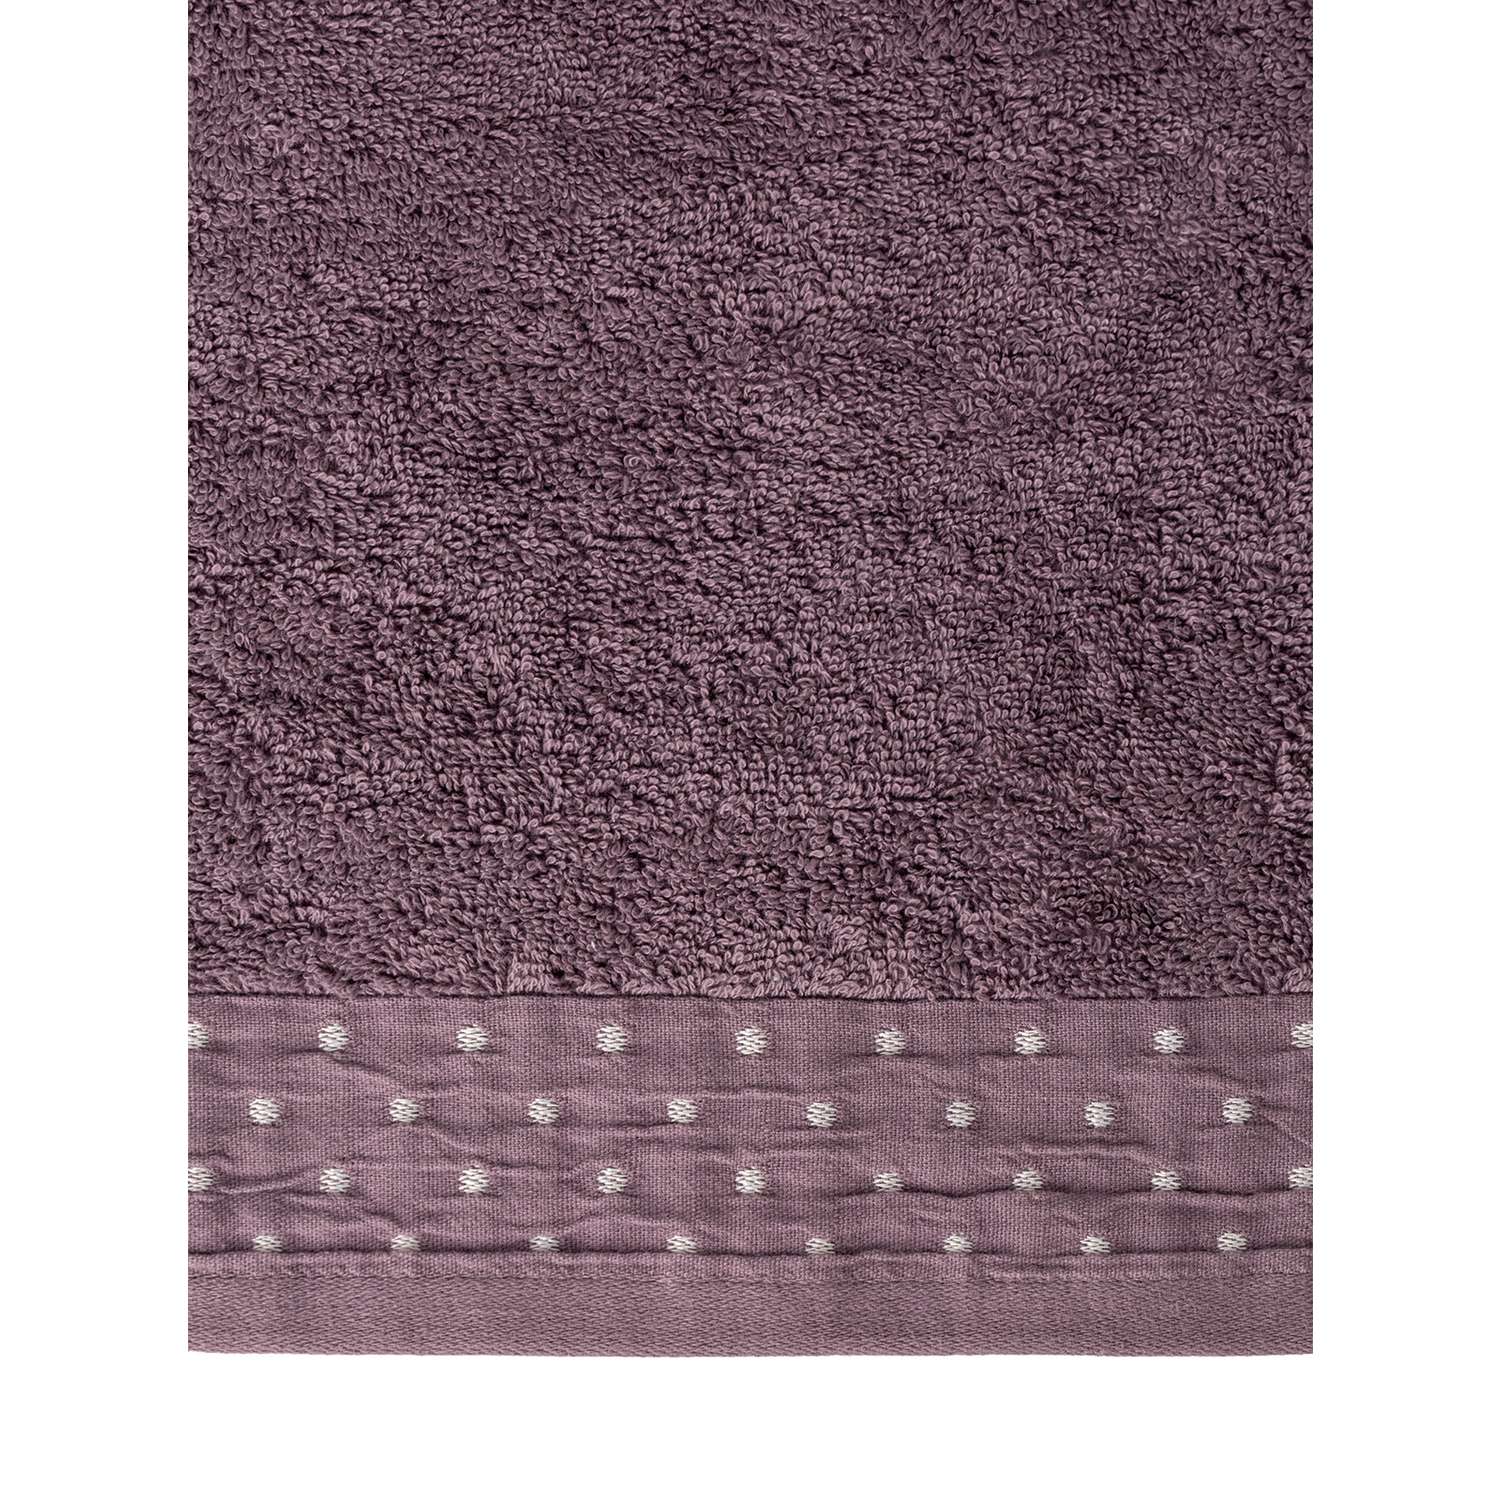 Полотенце махровое LUCKY с бордюром 35x70 см 100% хлопок лилово-коричневый D100312 - фото 4